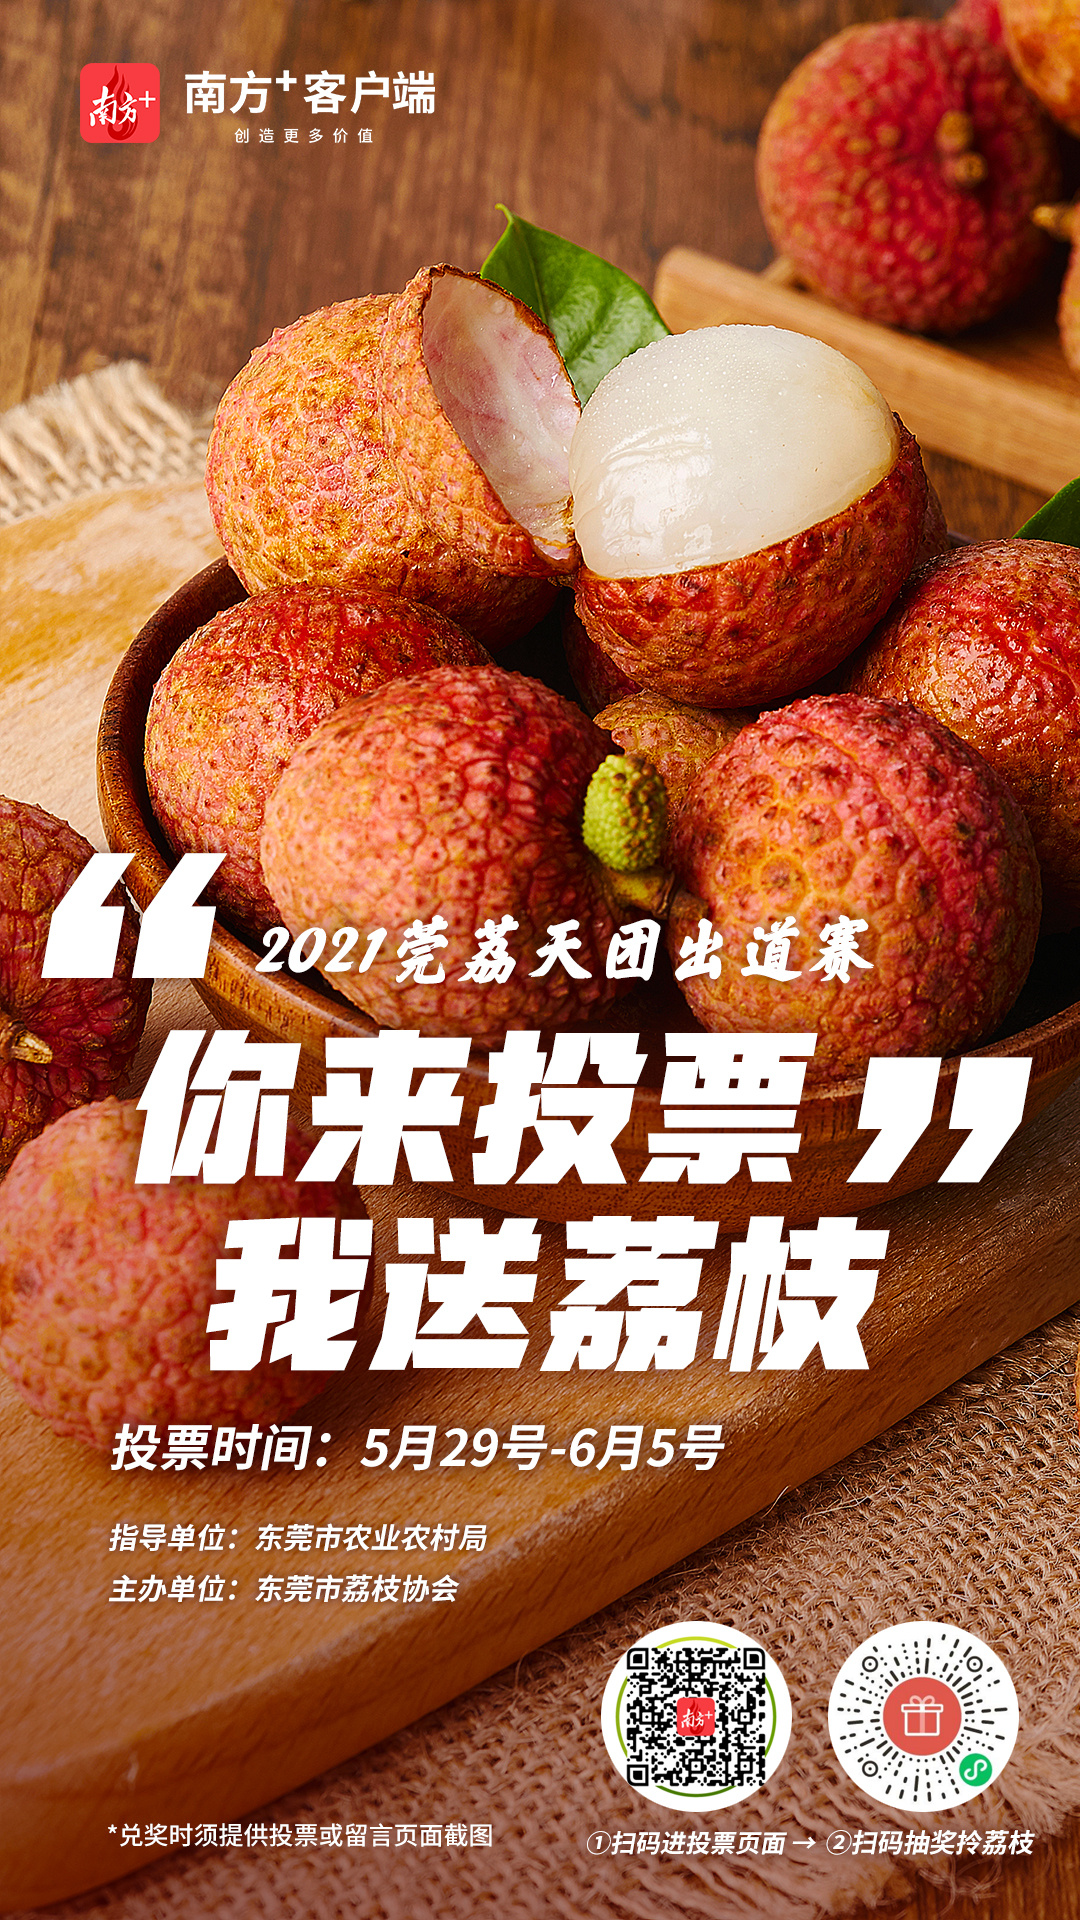 【岭南荔枝】3斤广州荔枝 鲜甜多汁 - 晴天里-享受健康美好生活